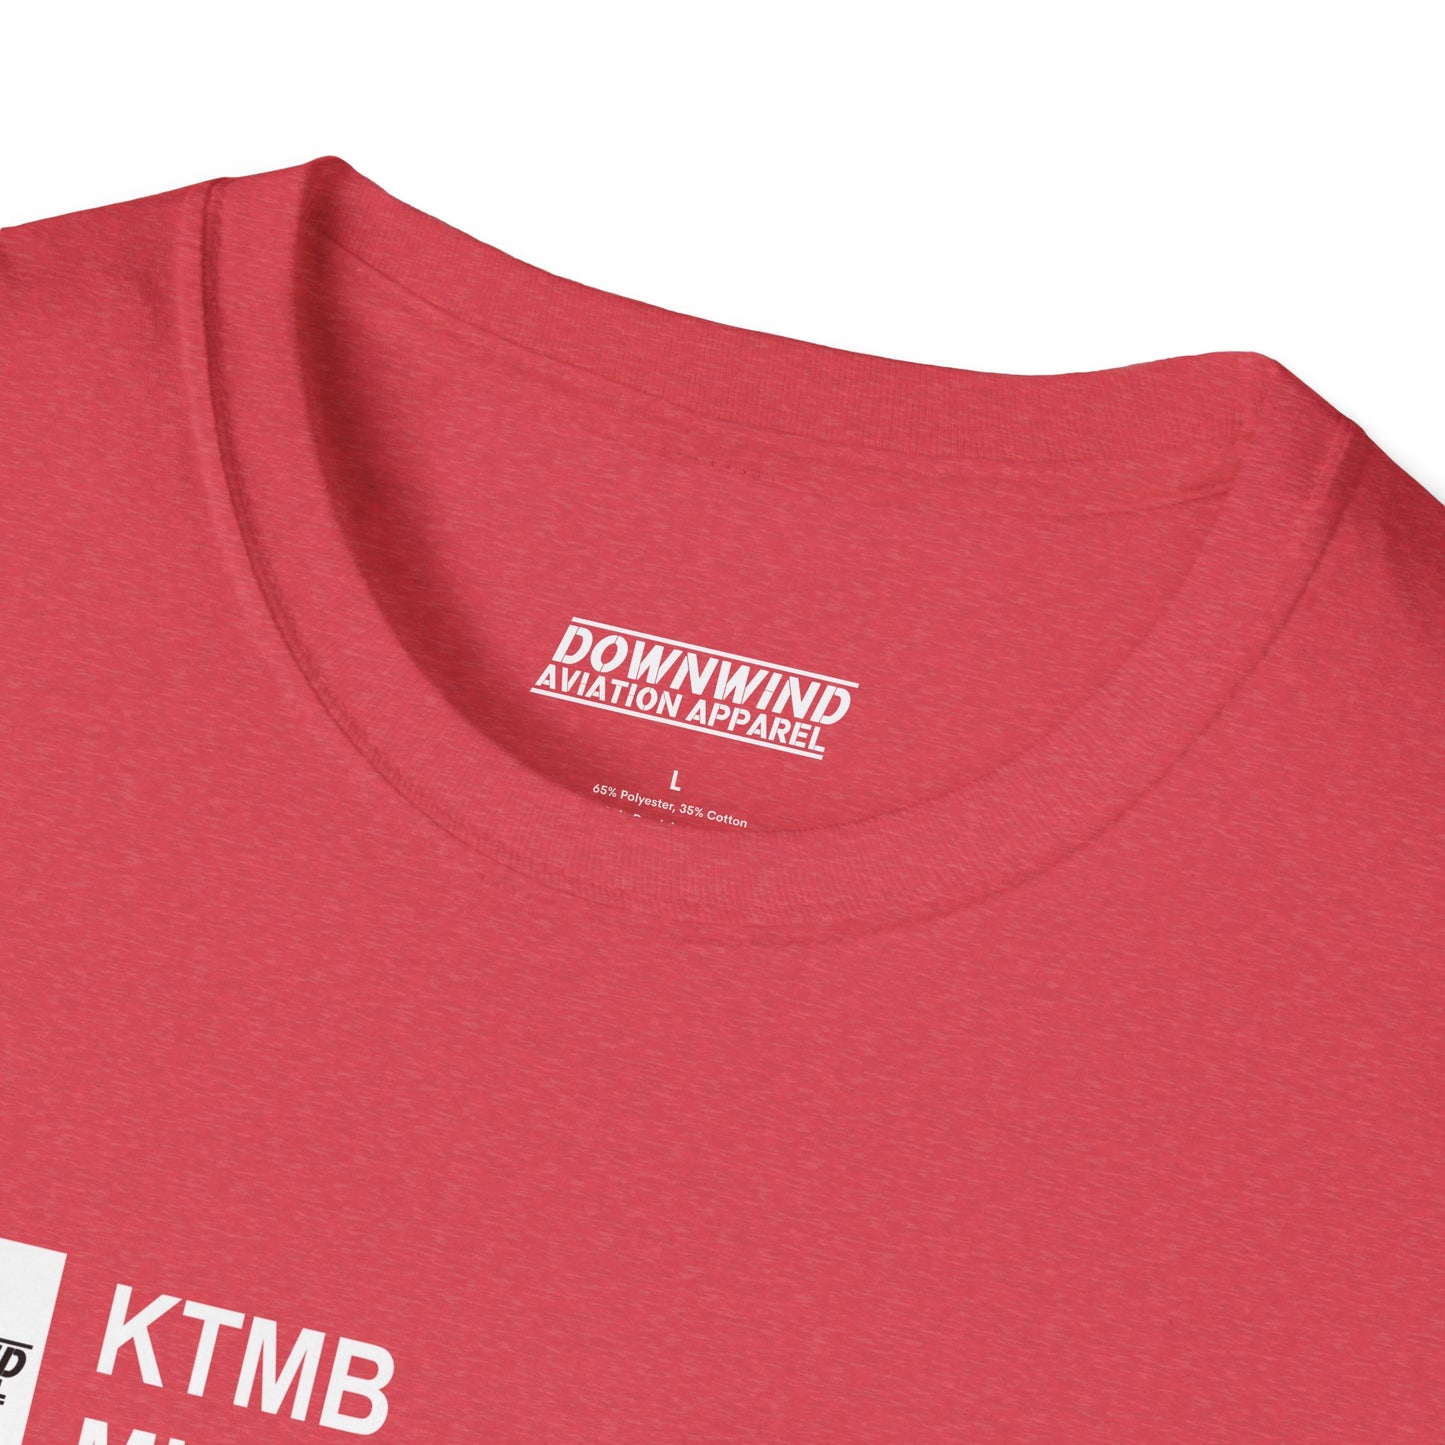 KTMB / Miami Exec. Airport T-Shirt